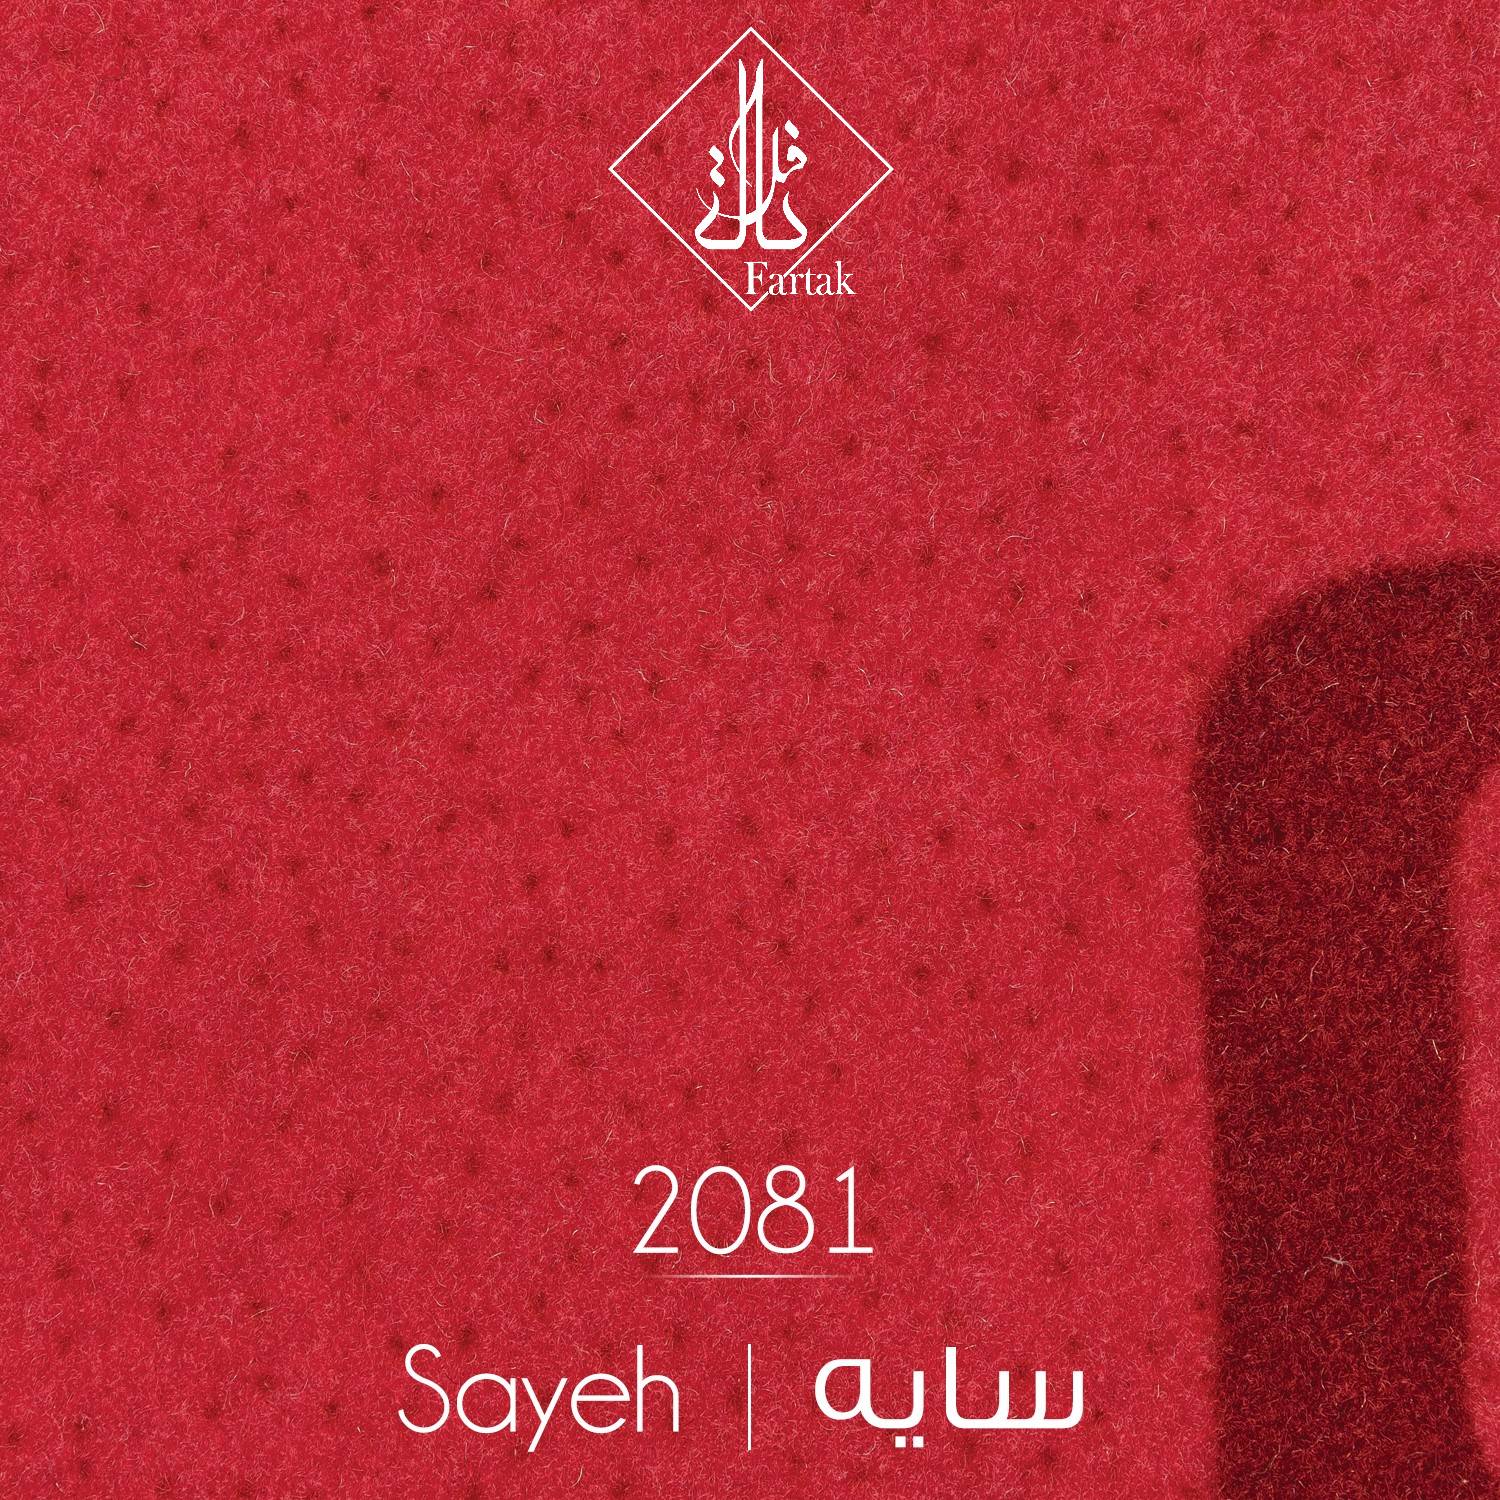 موکت ظریف مصور طرح سایه کد ۲۰8۱